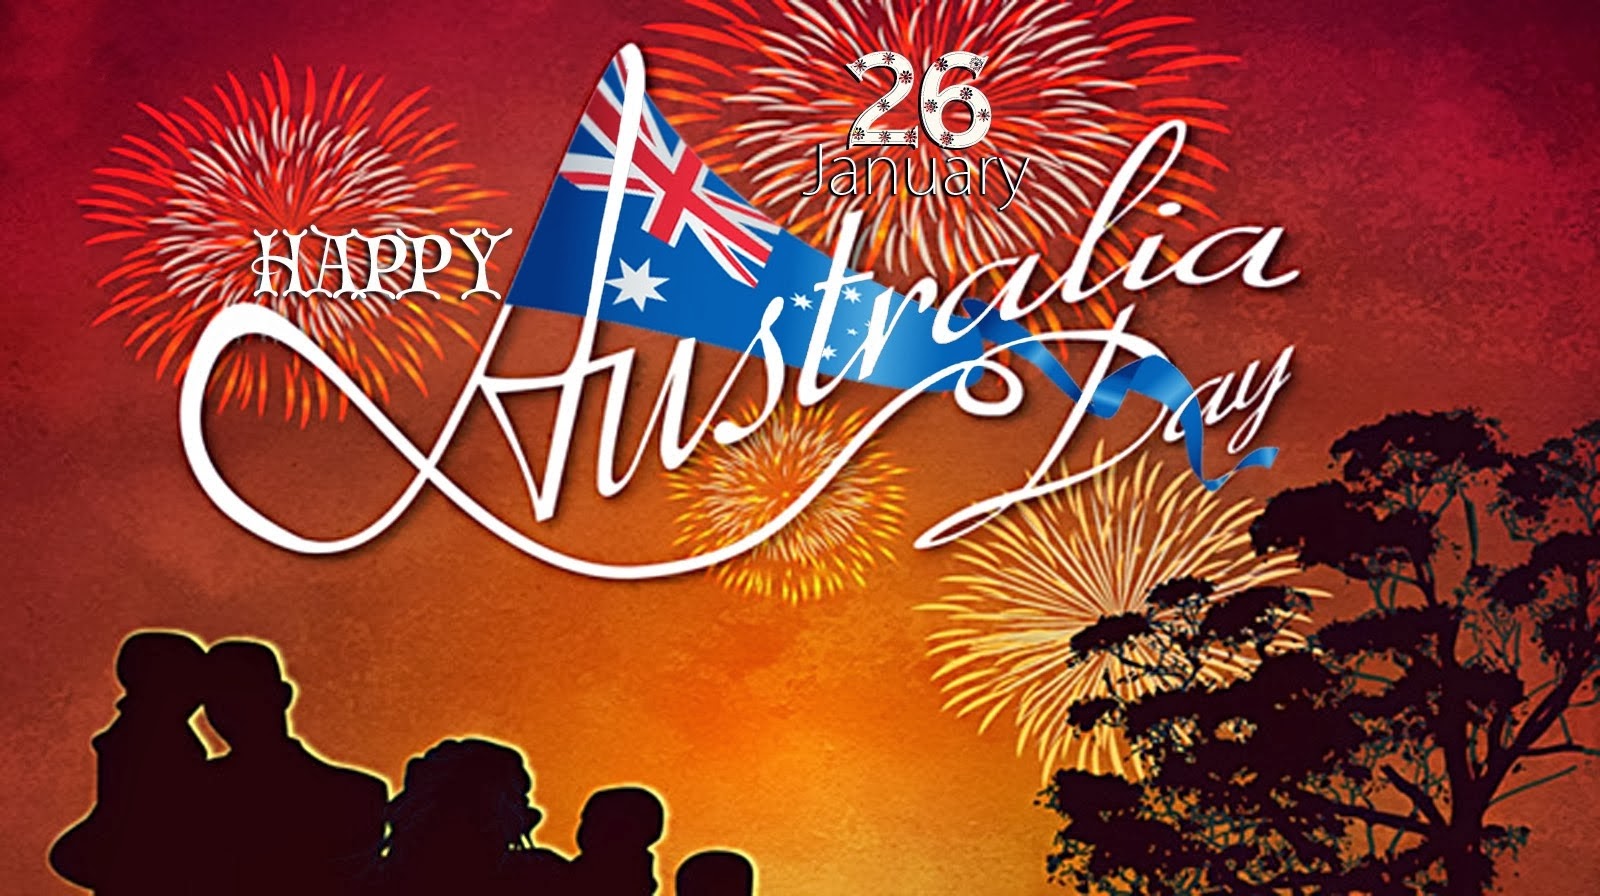 happy Australia Day 26 january